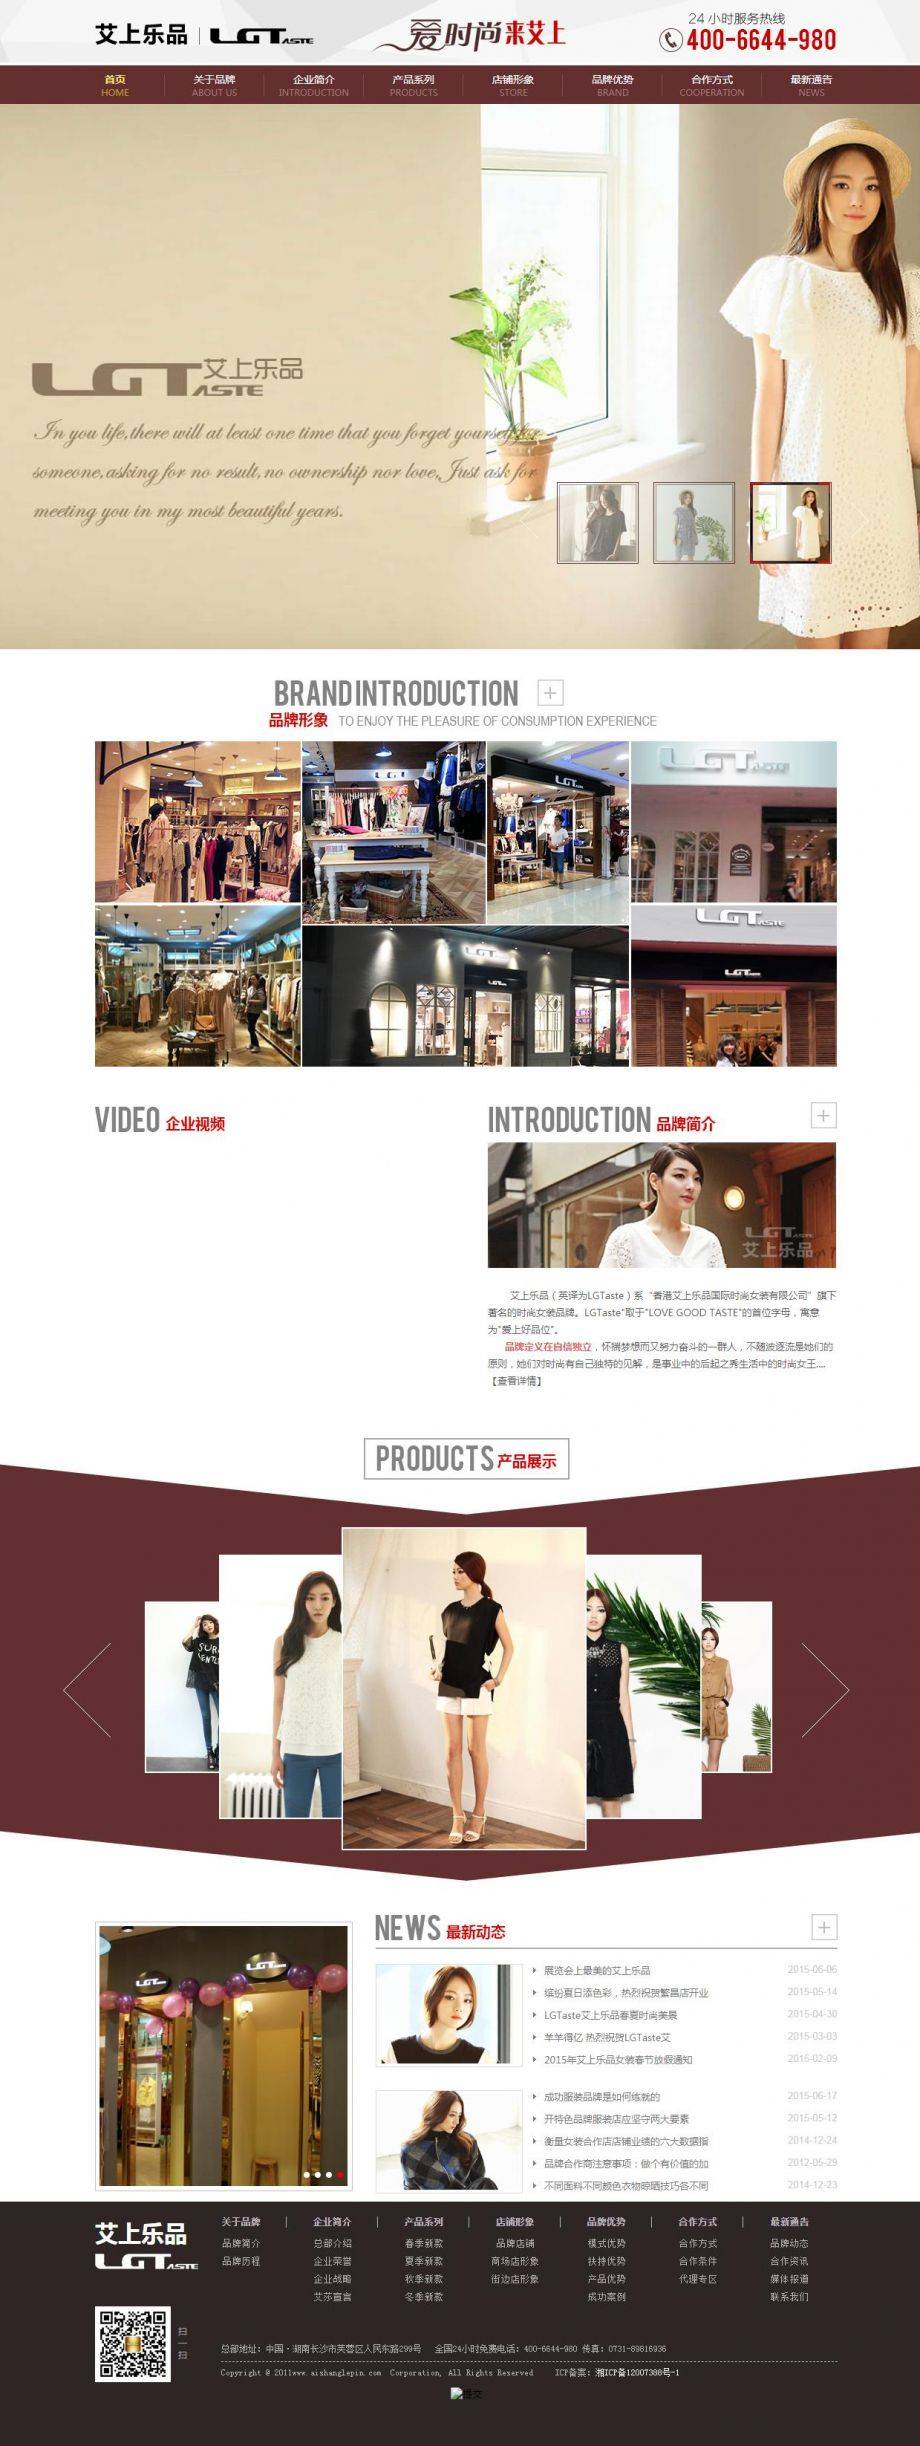 H5艾上乐品公司品牌推广网站模板